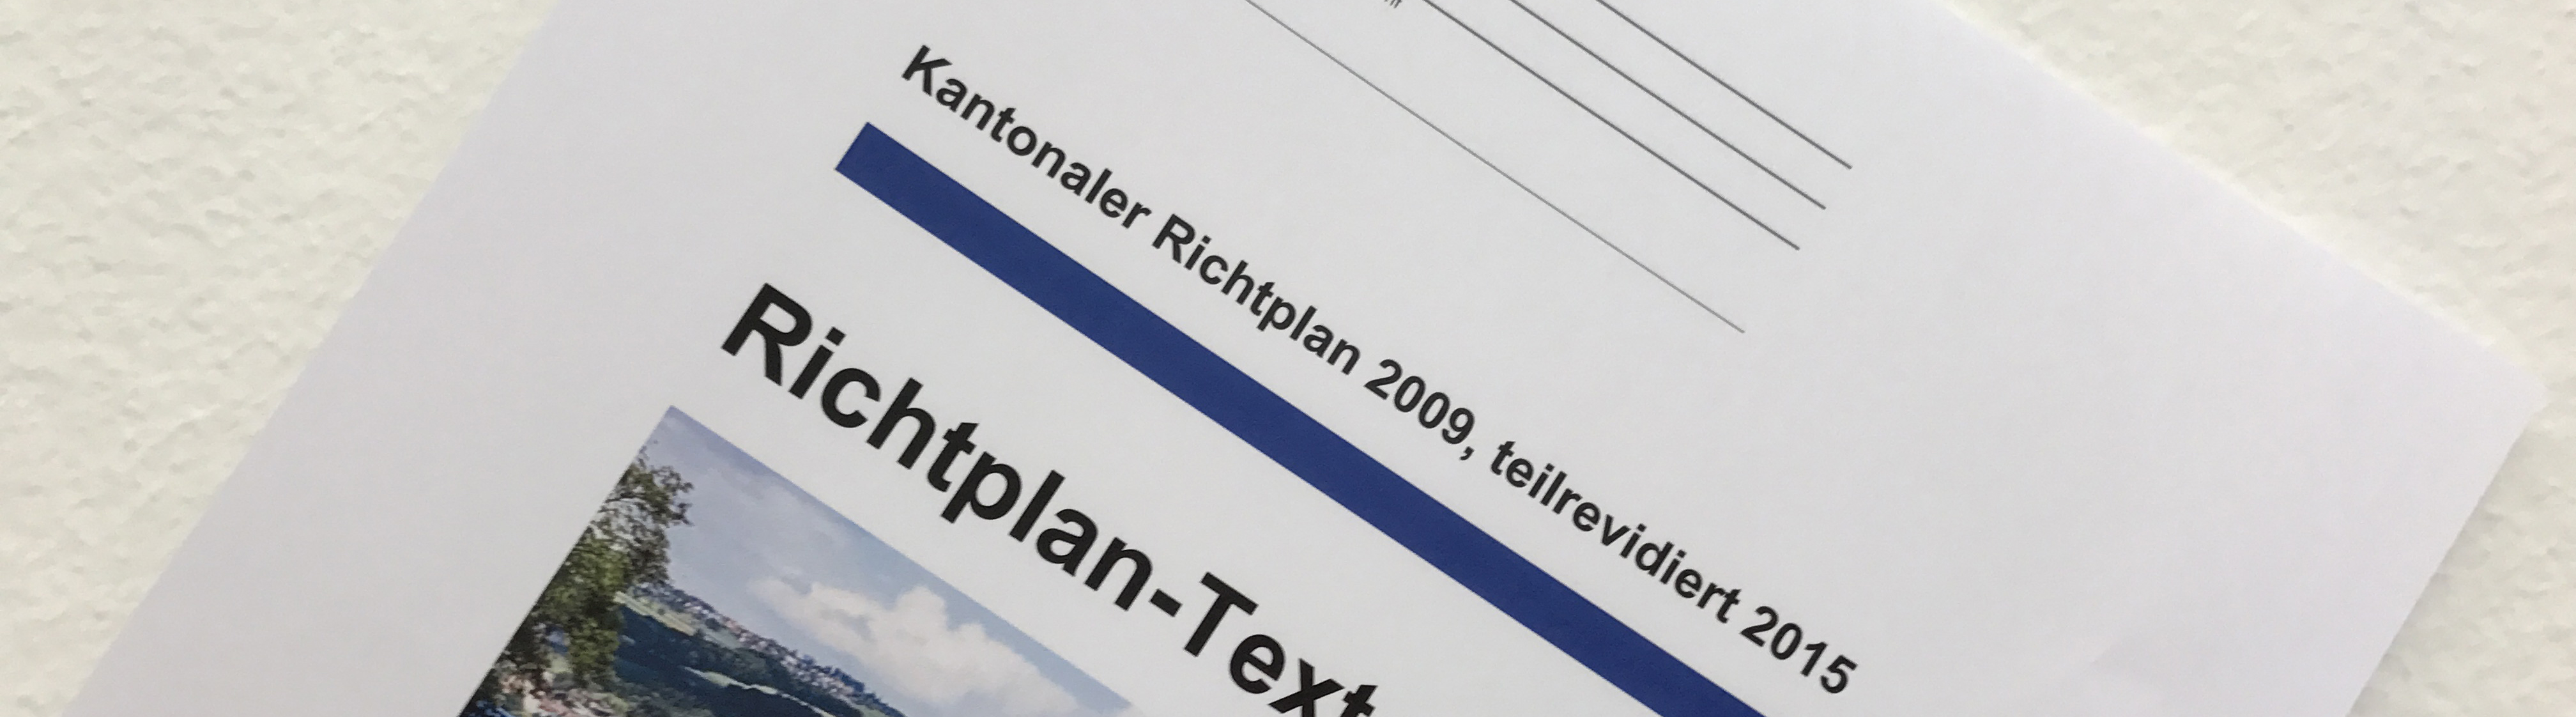 Richtplan-Text